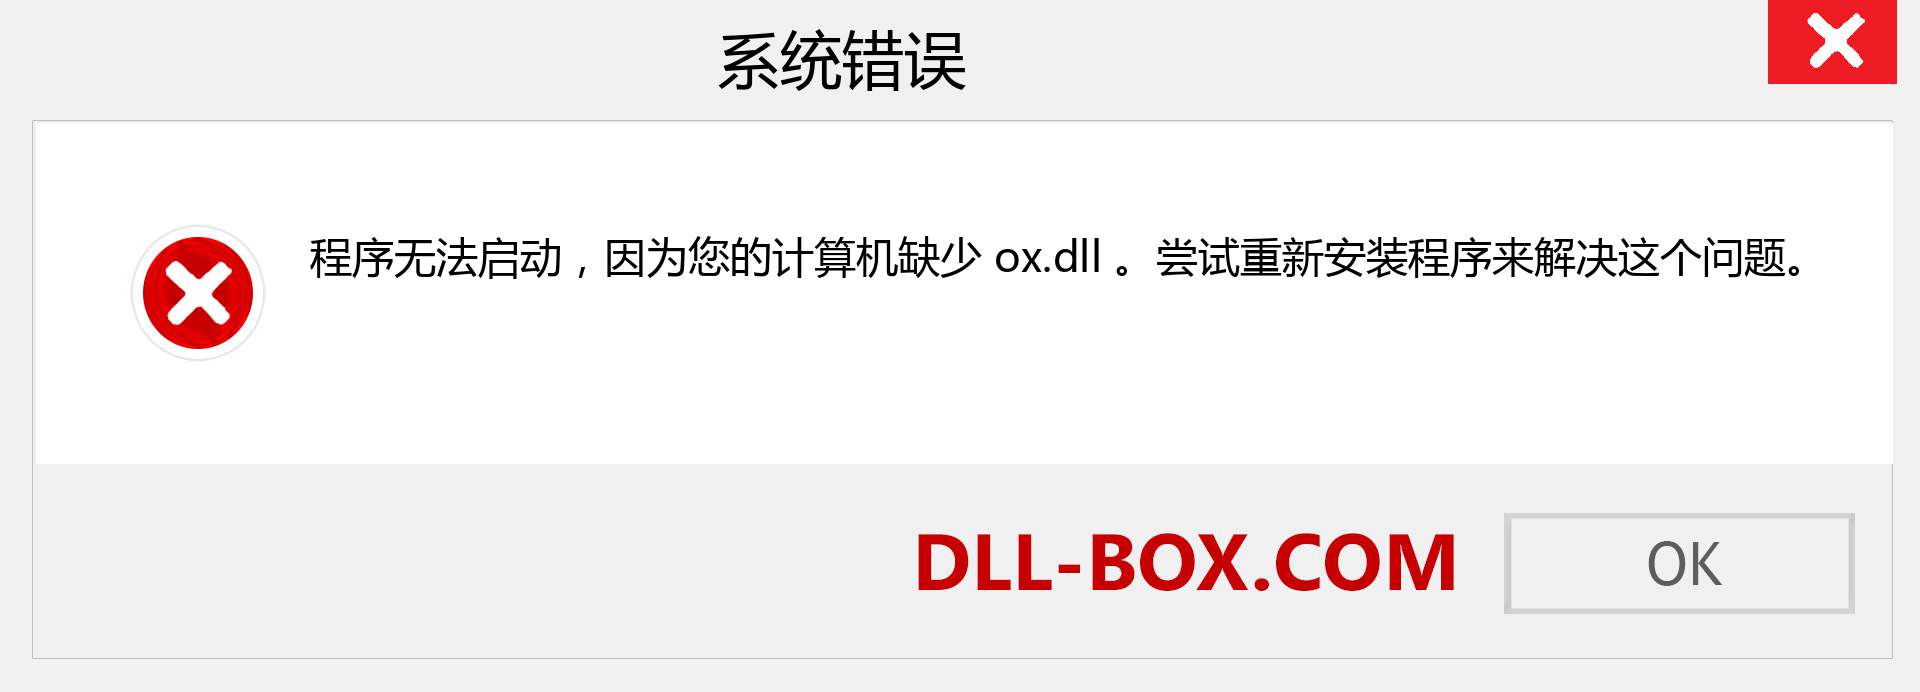 ox.dll 文件丢失？。 适用于 Windows 7、8、10 的下载 - 修复 Windows、照片、图像上的 ox dll 丢失错误